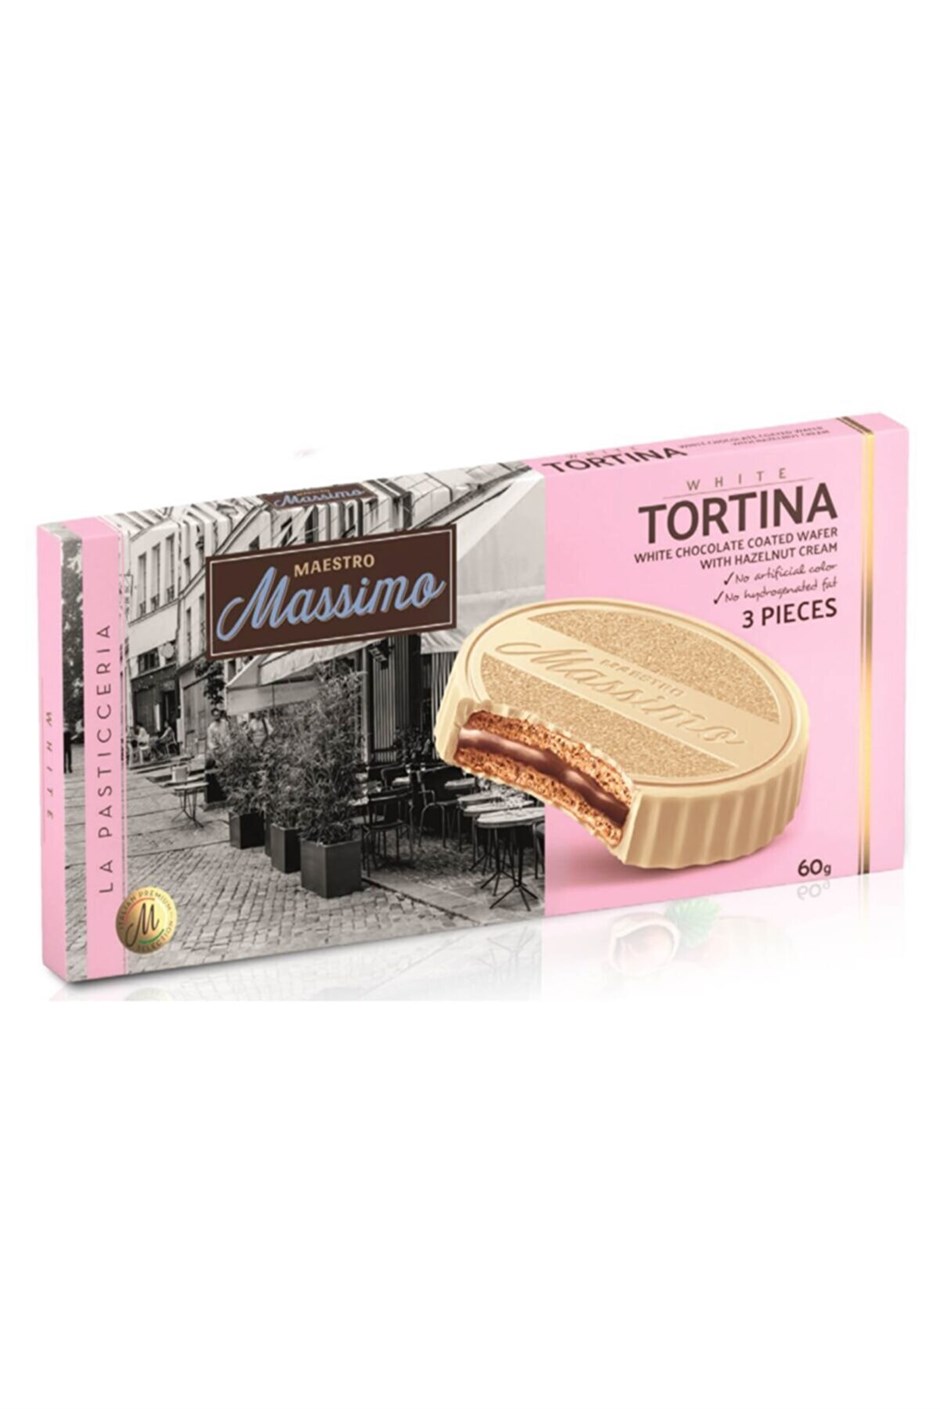 massimo-tortina-white-chocolatte-hazelnut